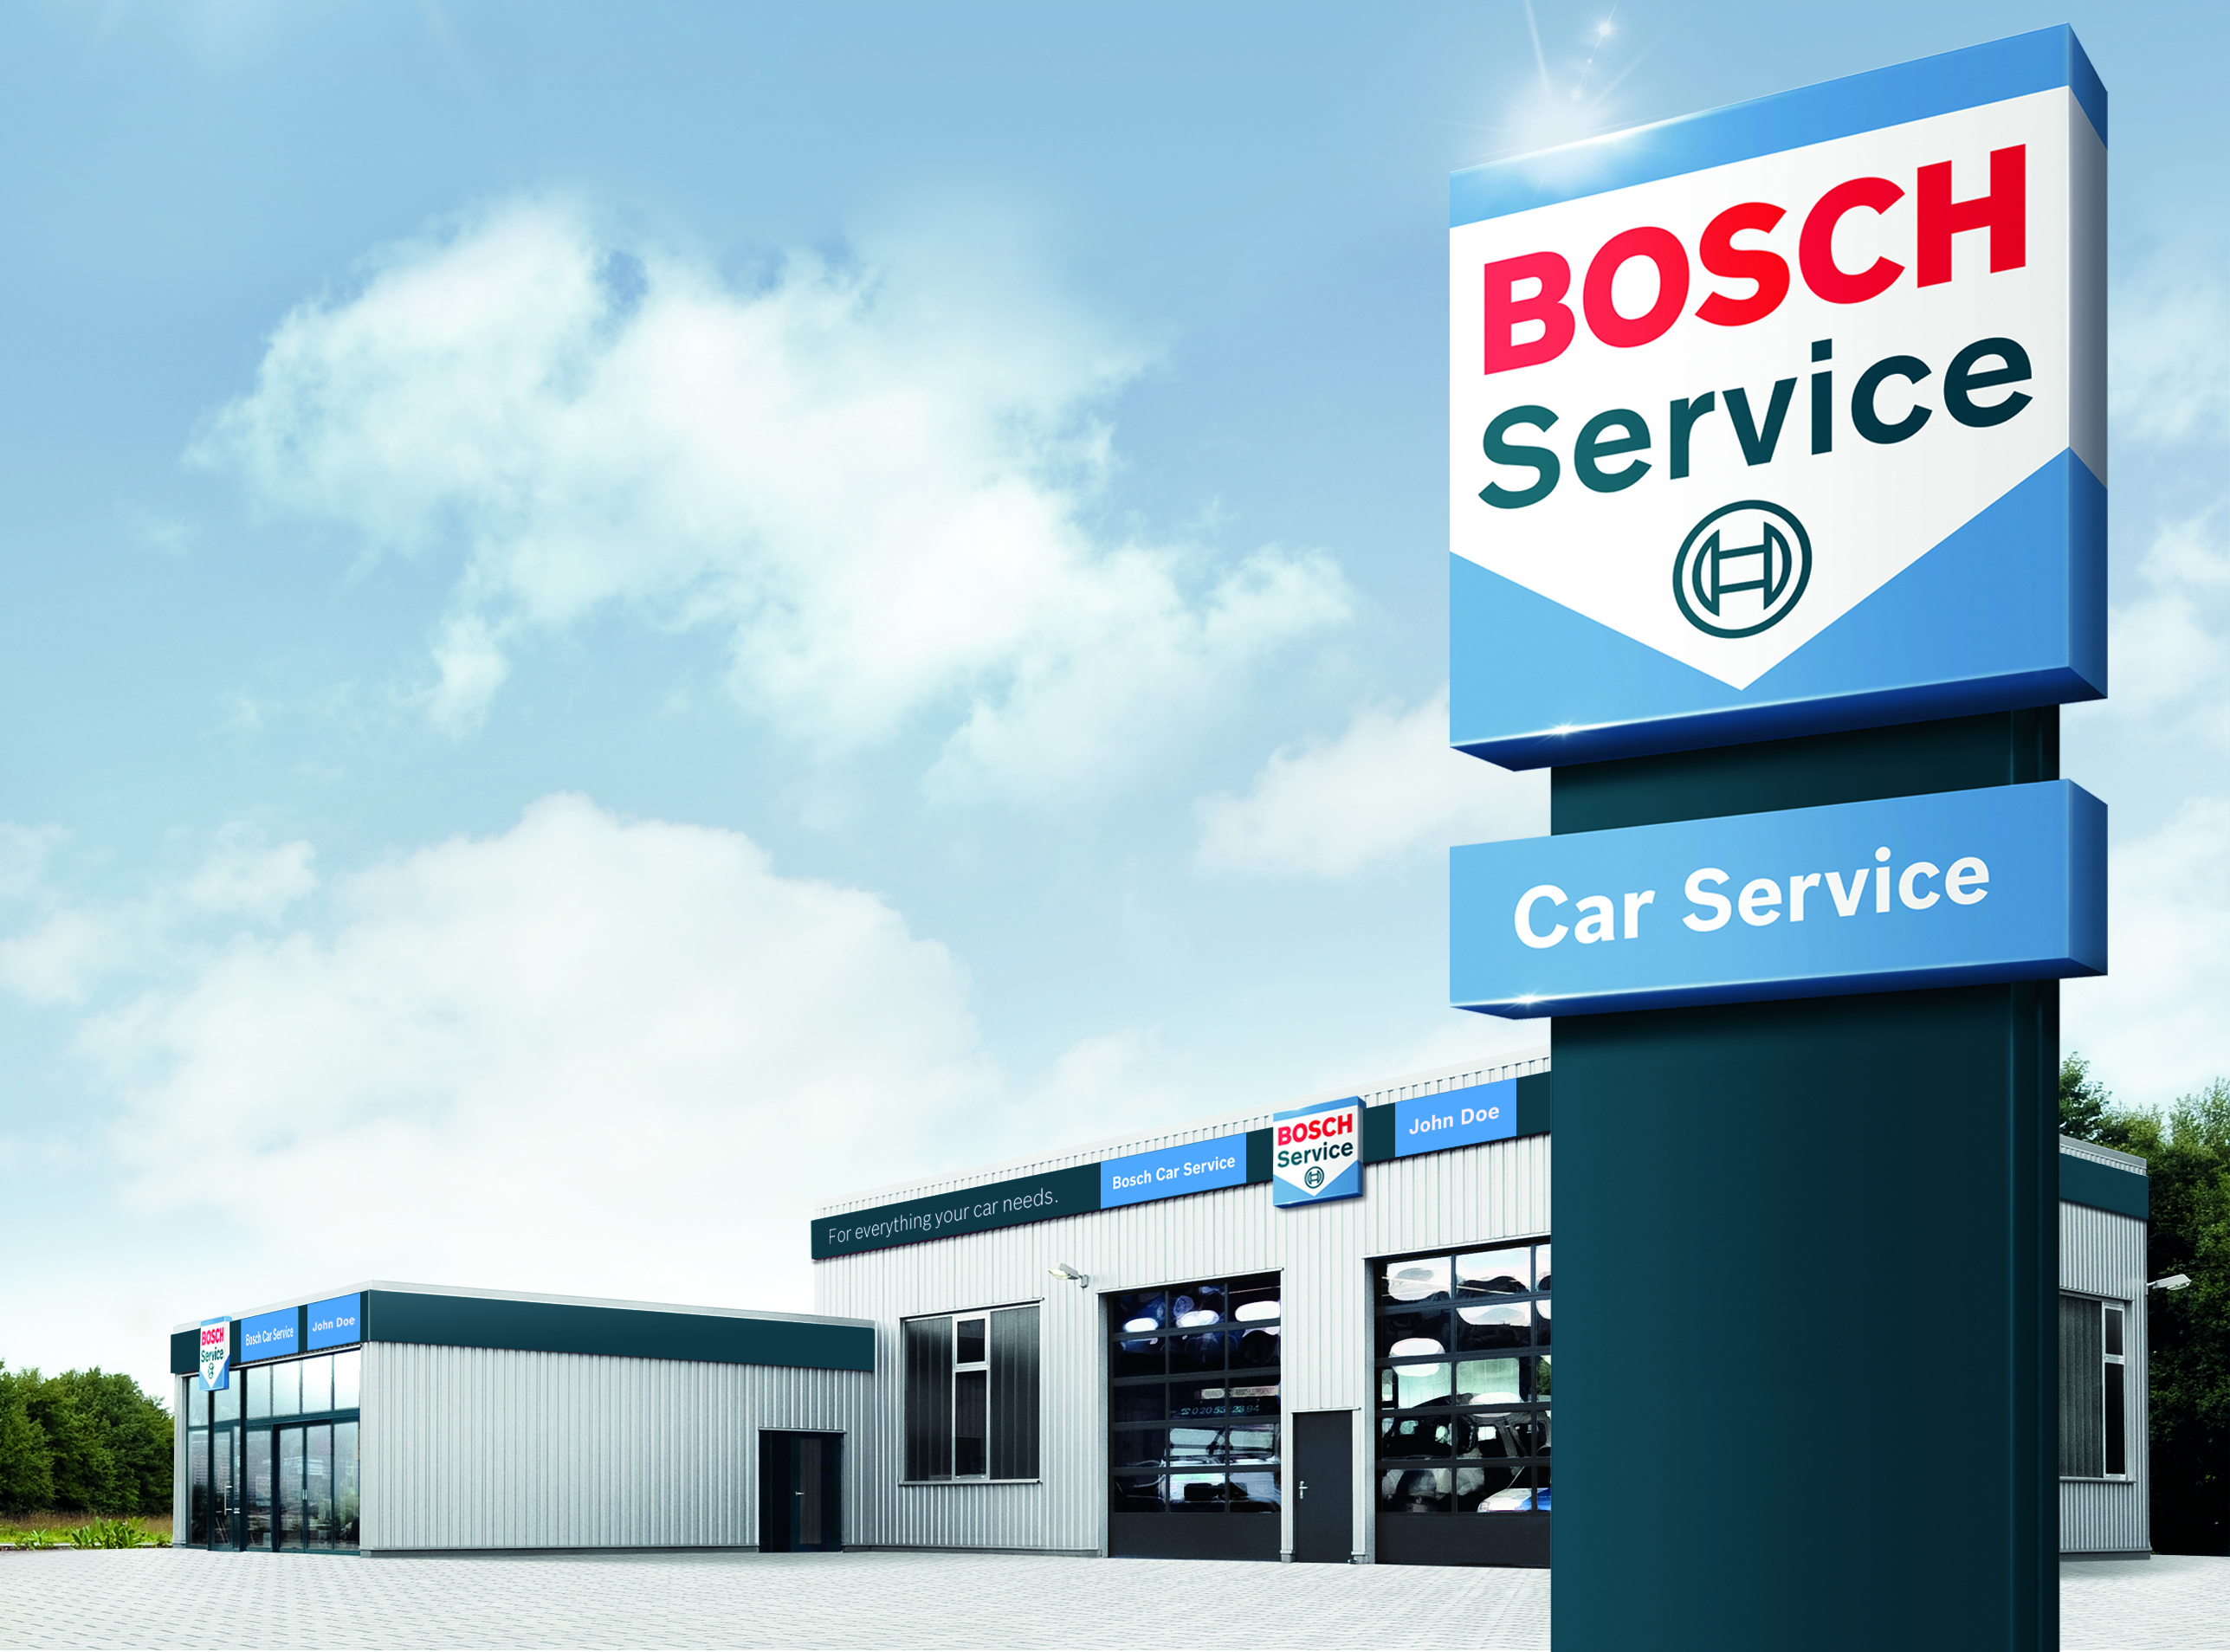 Bosch Car Service Pechhulp